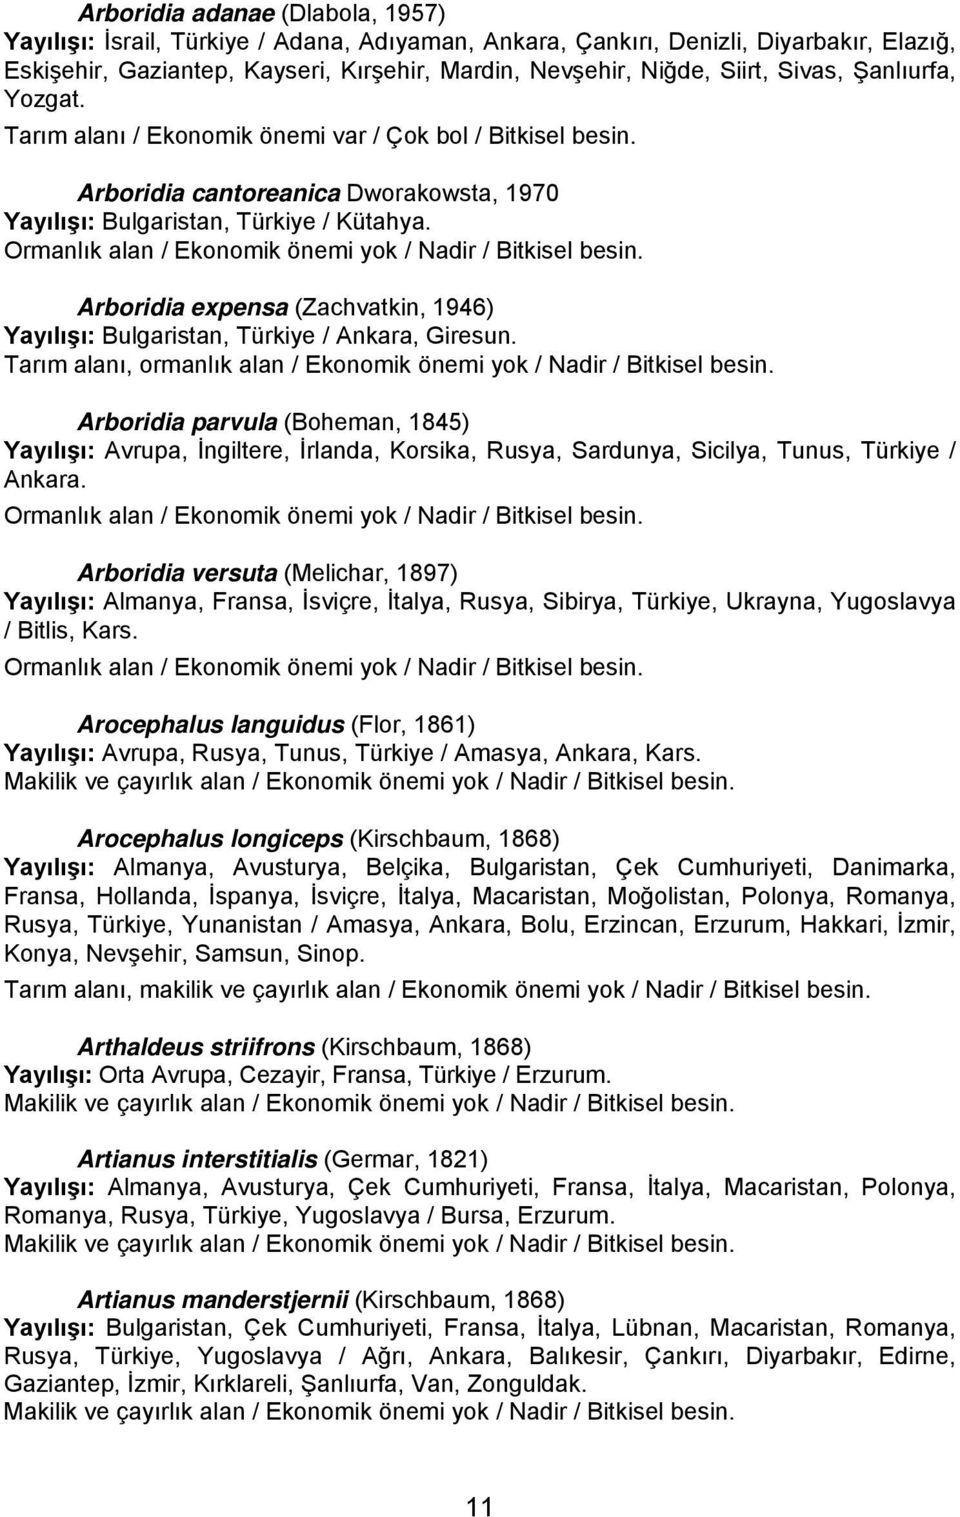 Arboridia expensa (Zachvatkin, 1946) Yayılışı: Bulgaristan, Türkiye / Ankara, Giresun. Tarım alanı, ormanlık alan / Ekonomik önemi yok / Nadir / Bitkisel besin.